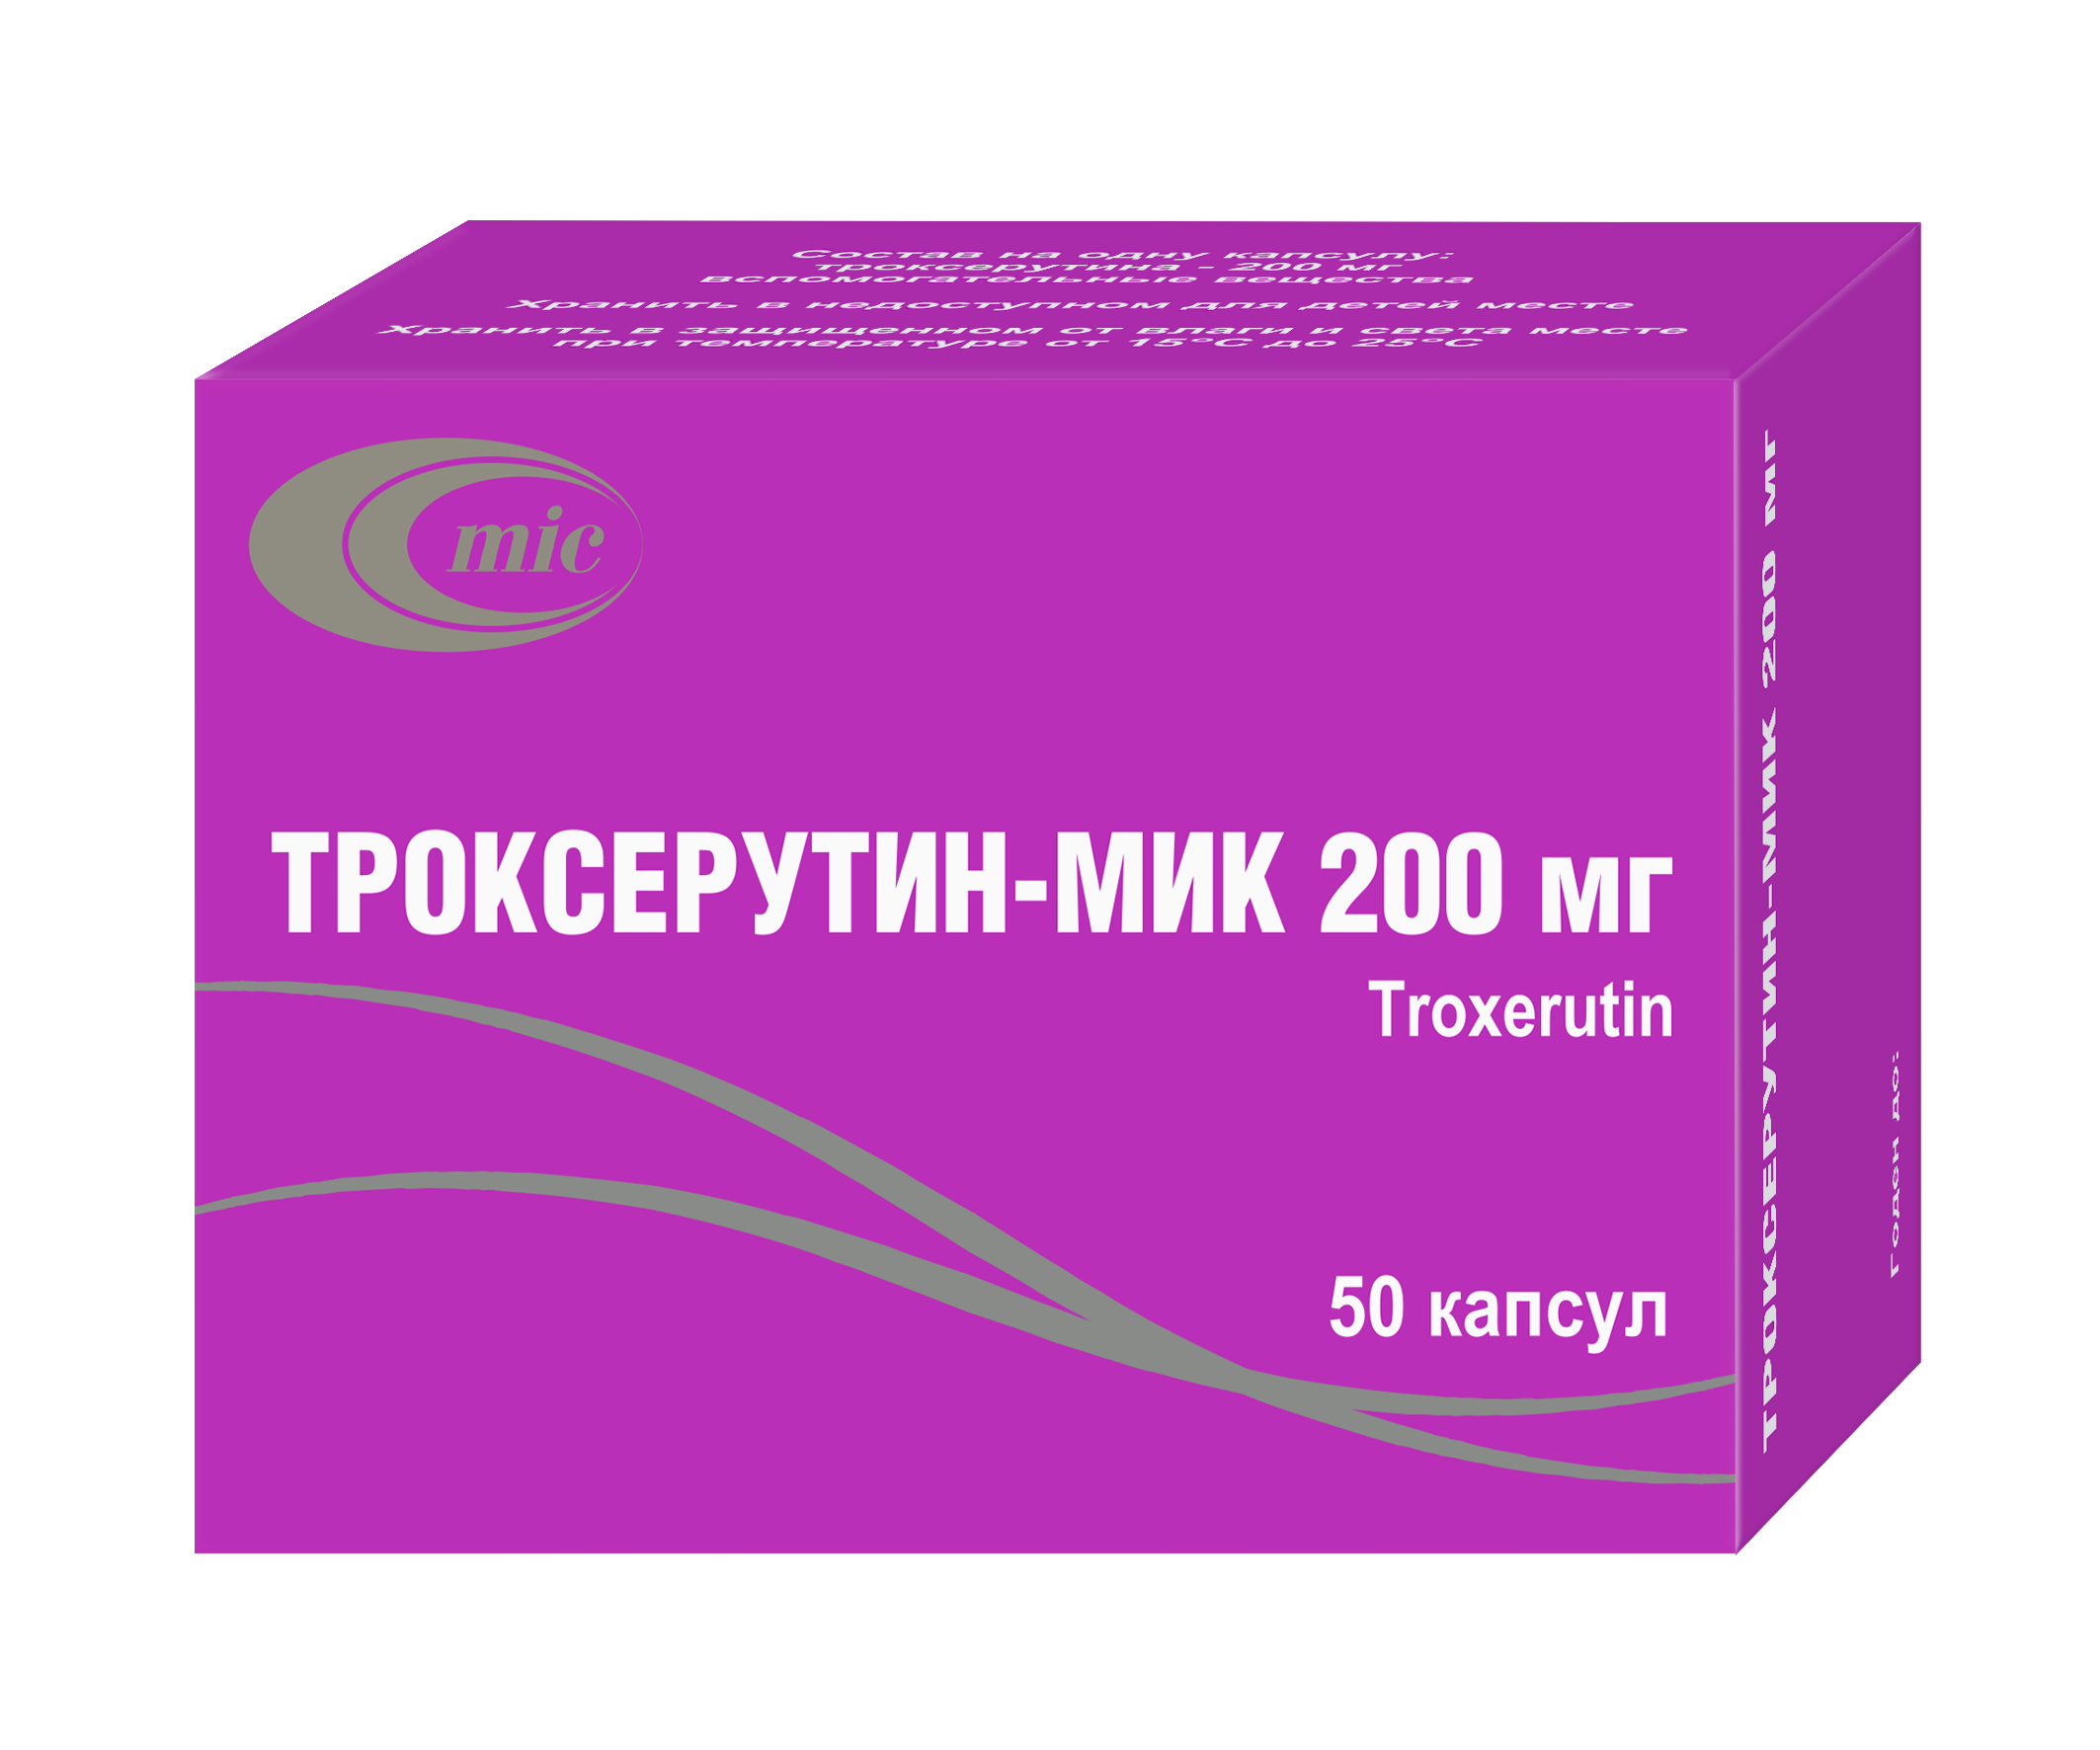 Троксерутин-МИК 200 мг - капсулы для лечения варикоза